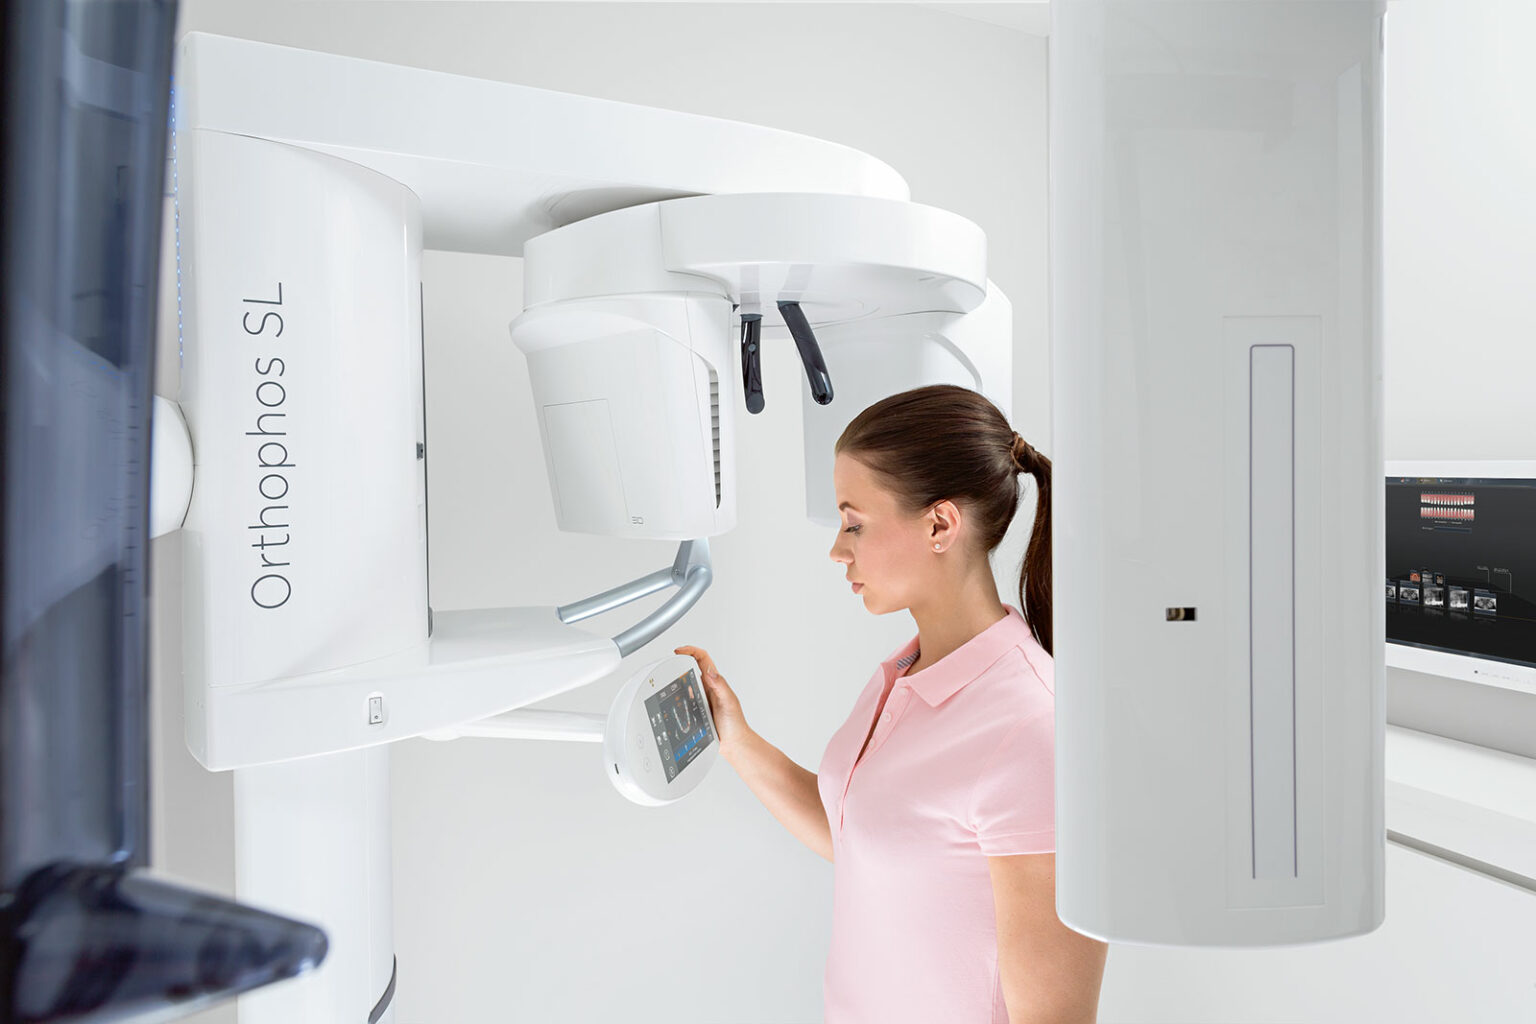 Zahnärztin bedient 3D-Röntgensystem über Touchscreen.